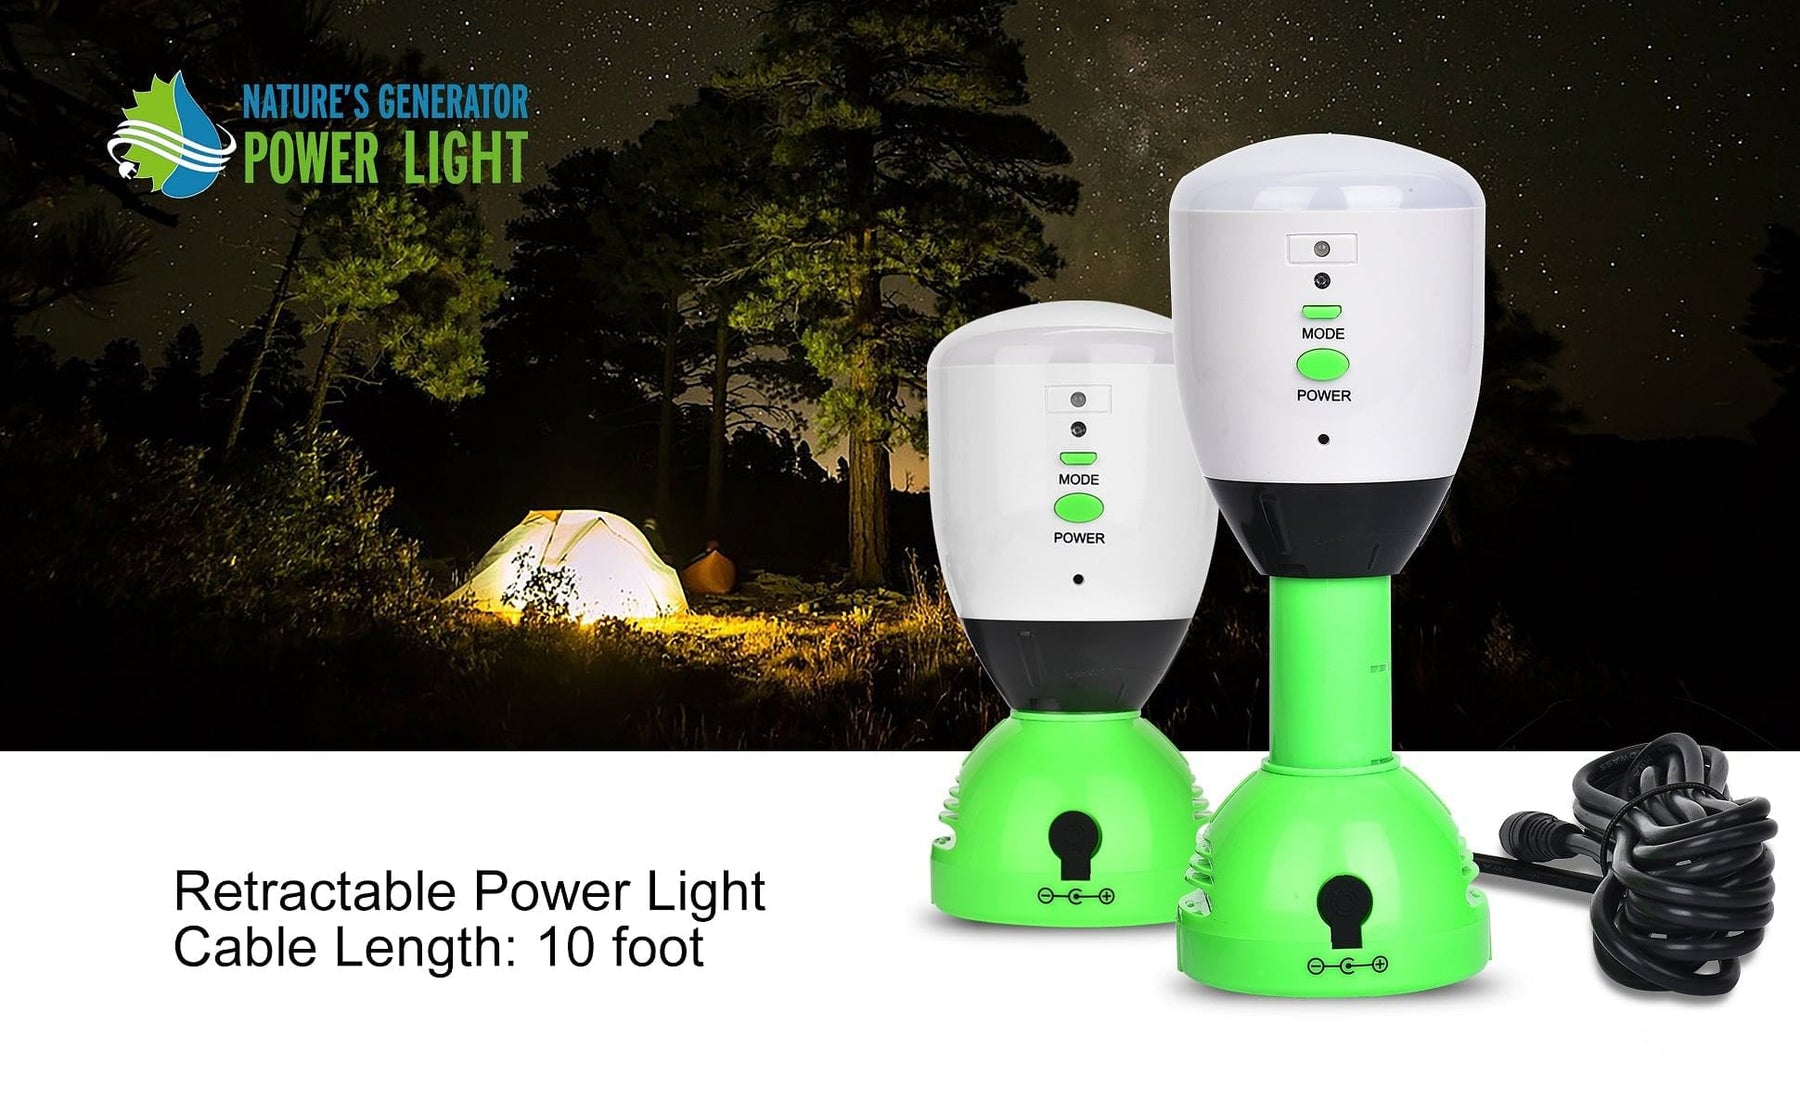 Nature's Generator Power Light